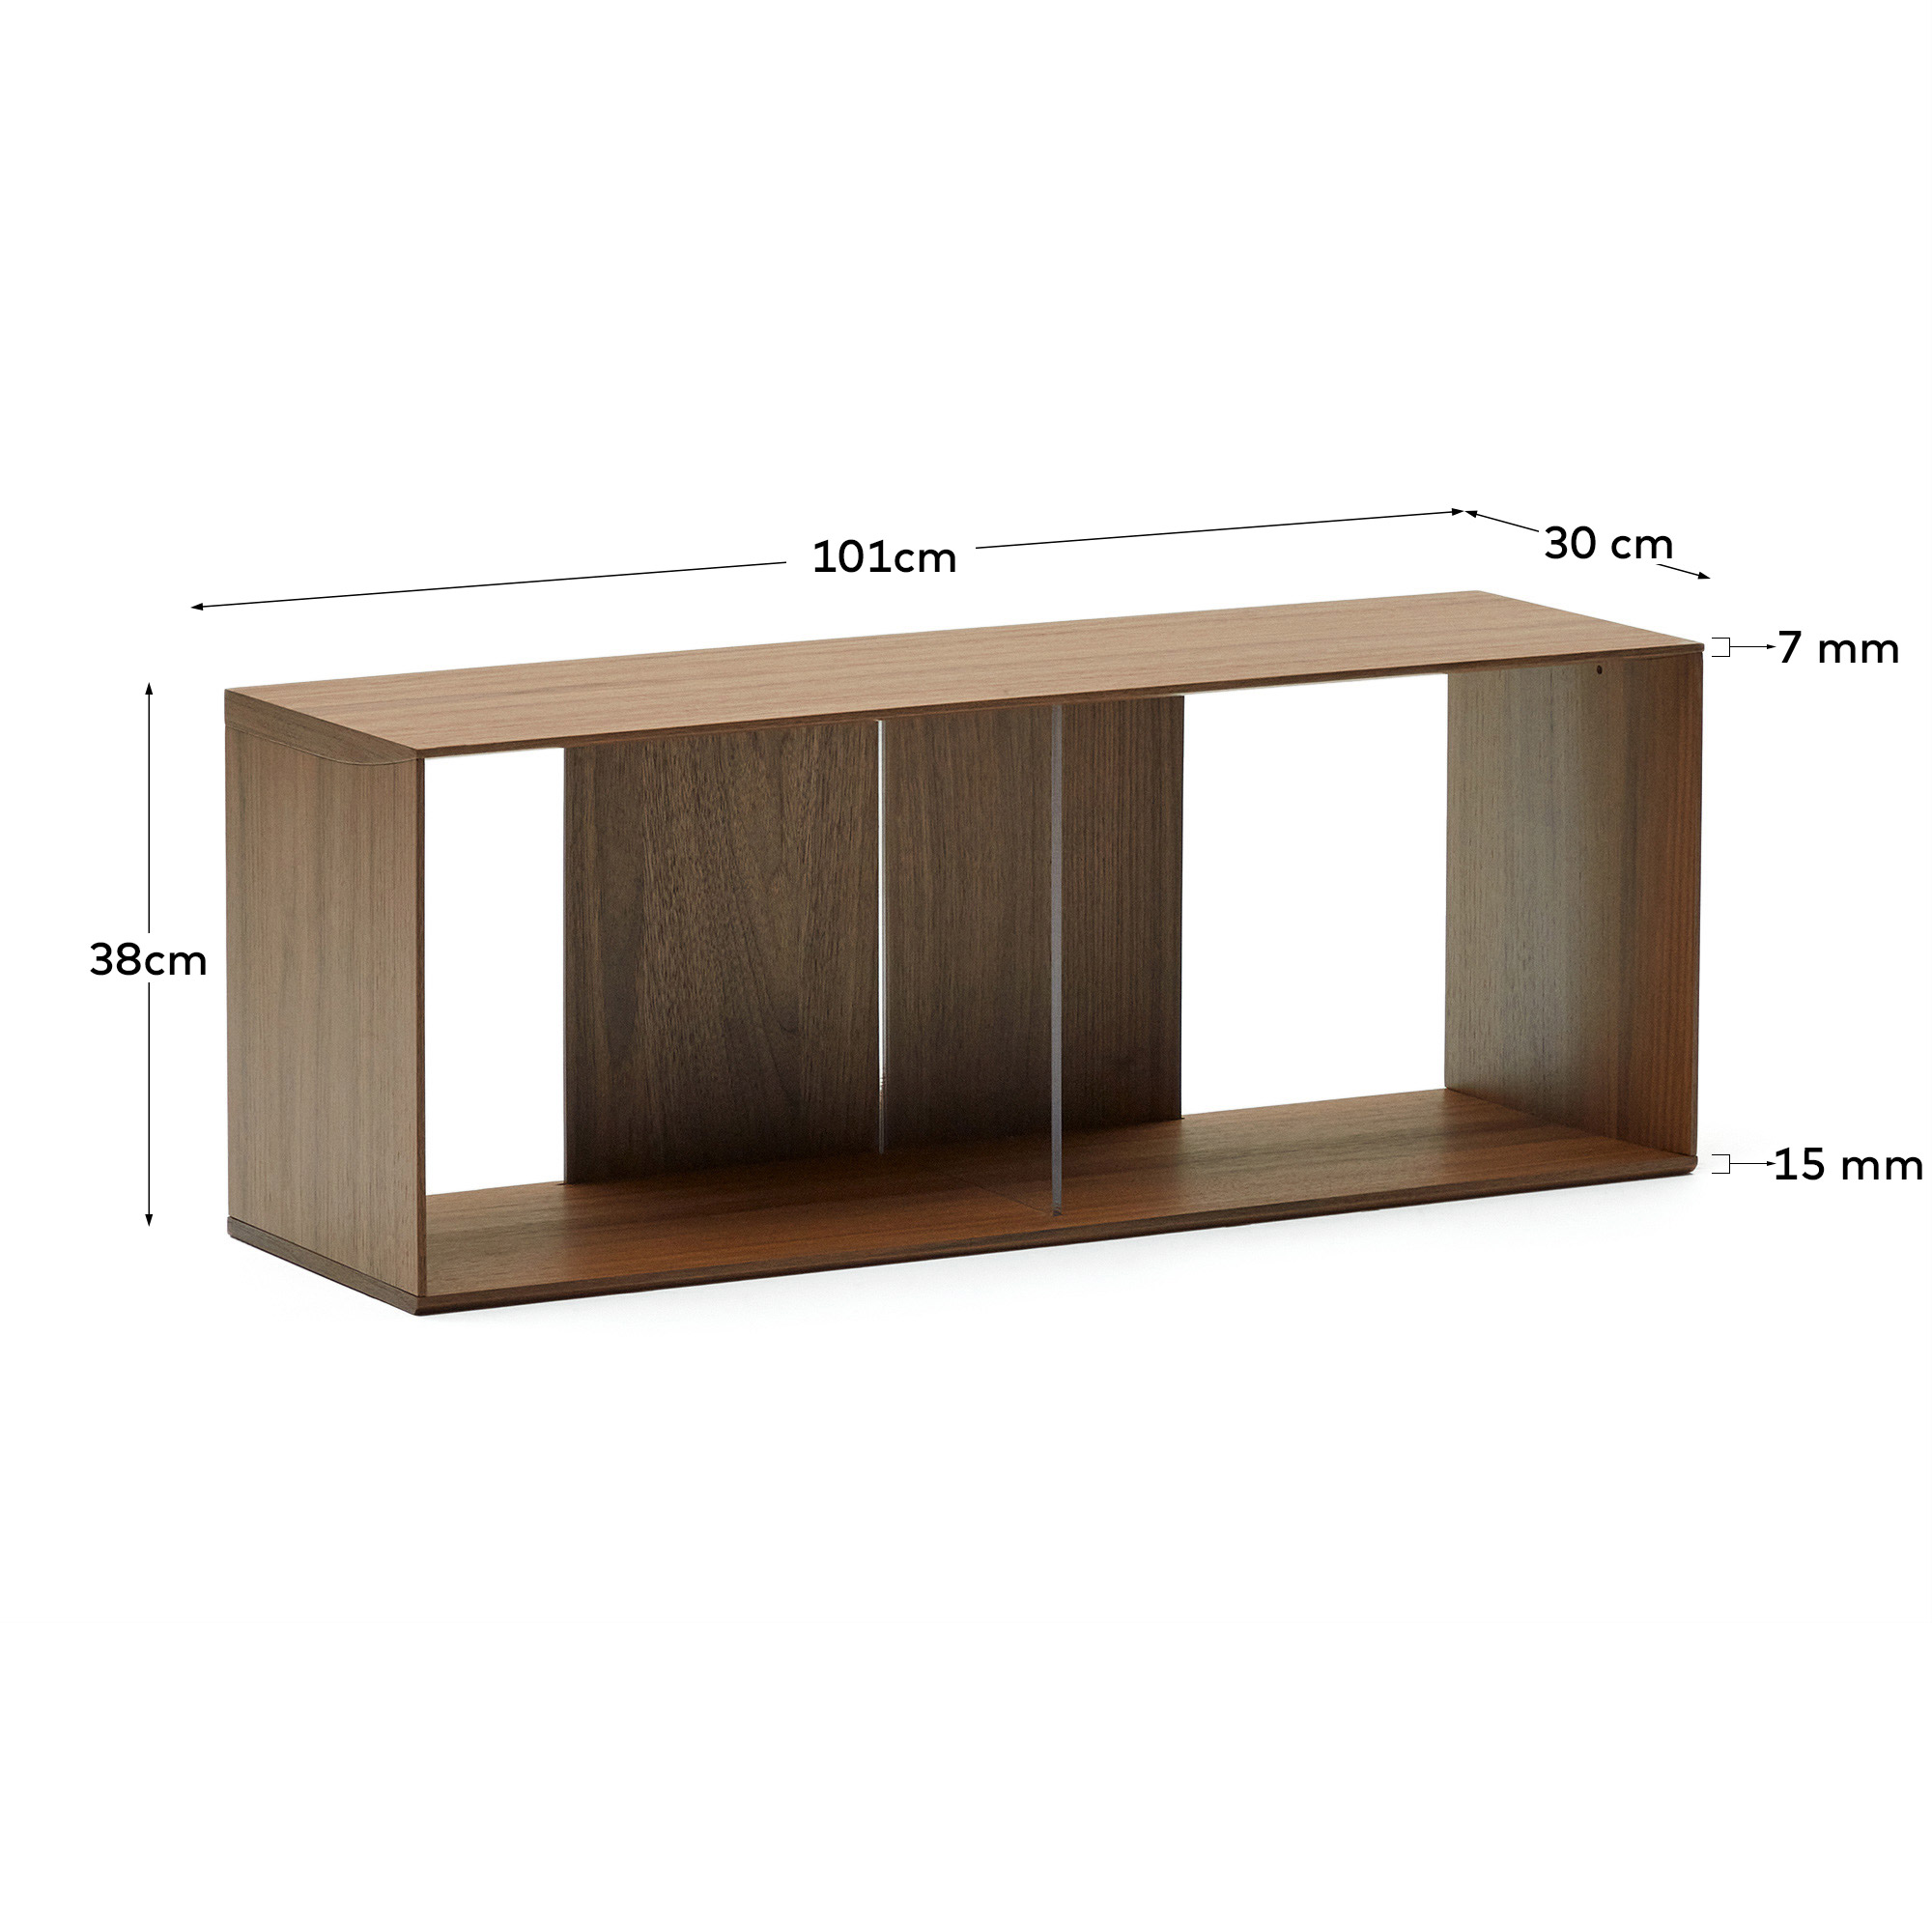 Litto large shelf module in walnut veneer, 101 x 38 cm - sizes